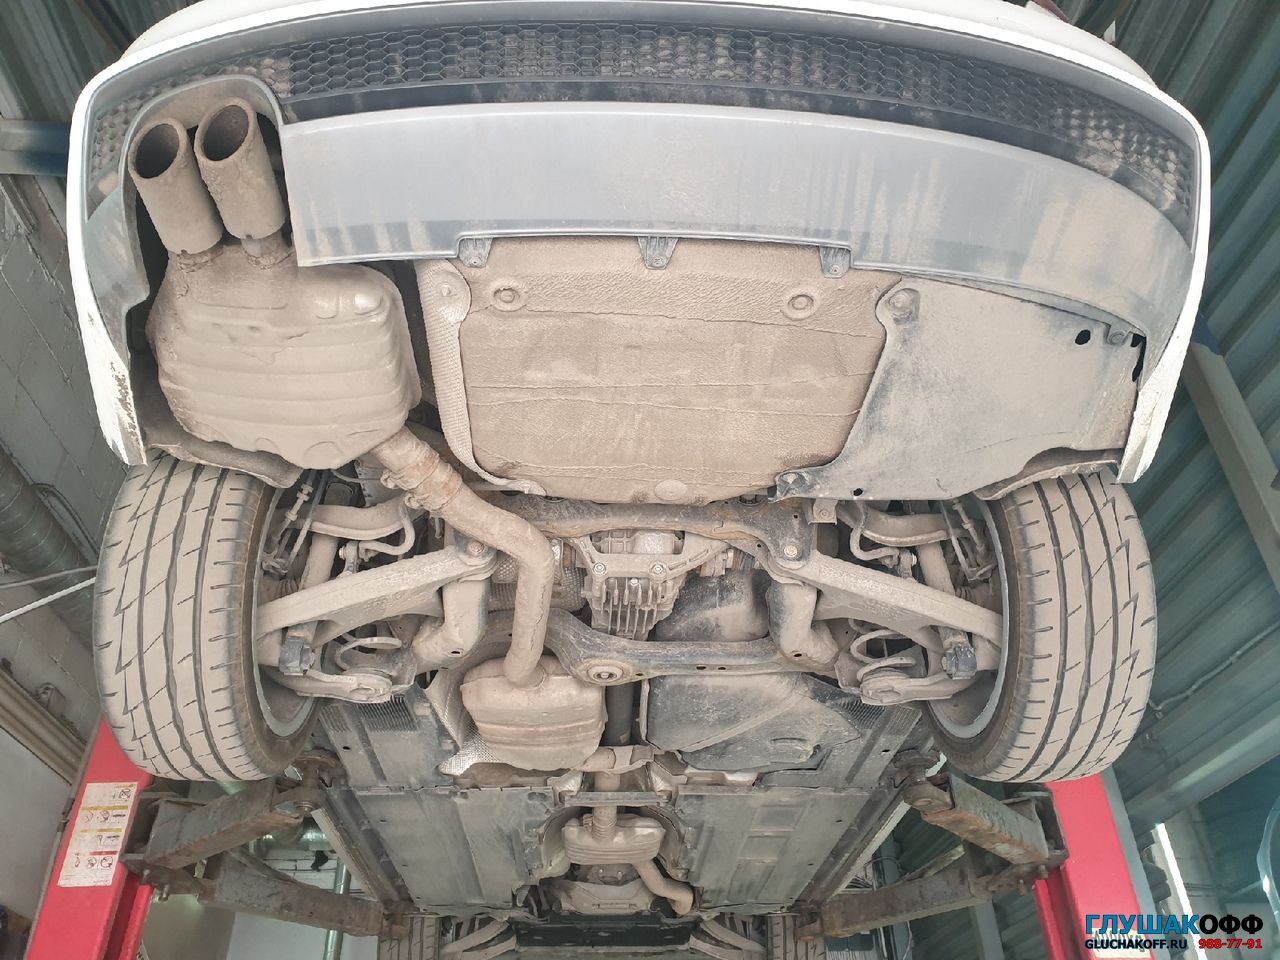 штатный выхлоп Audi A4 и его тюнинг в СПБ ГлушакоФФ